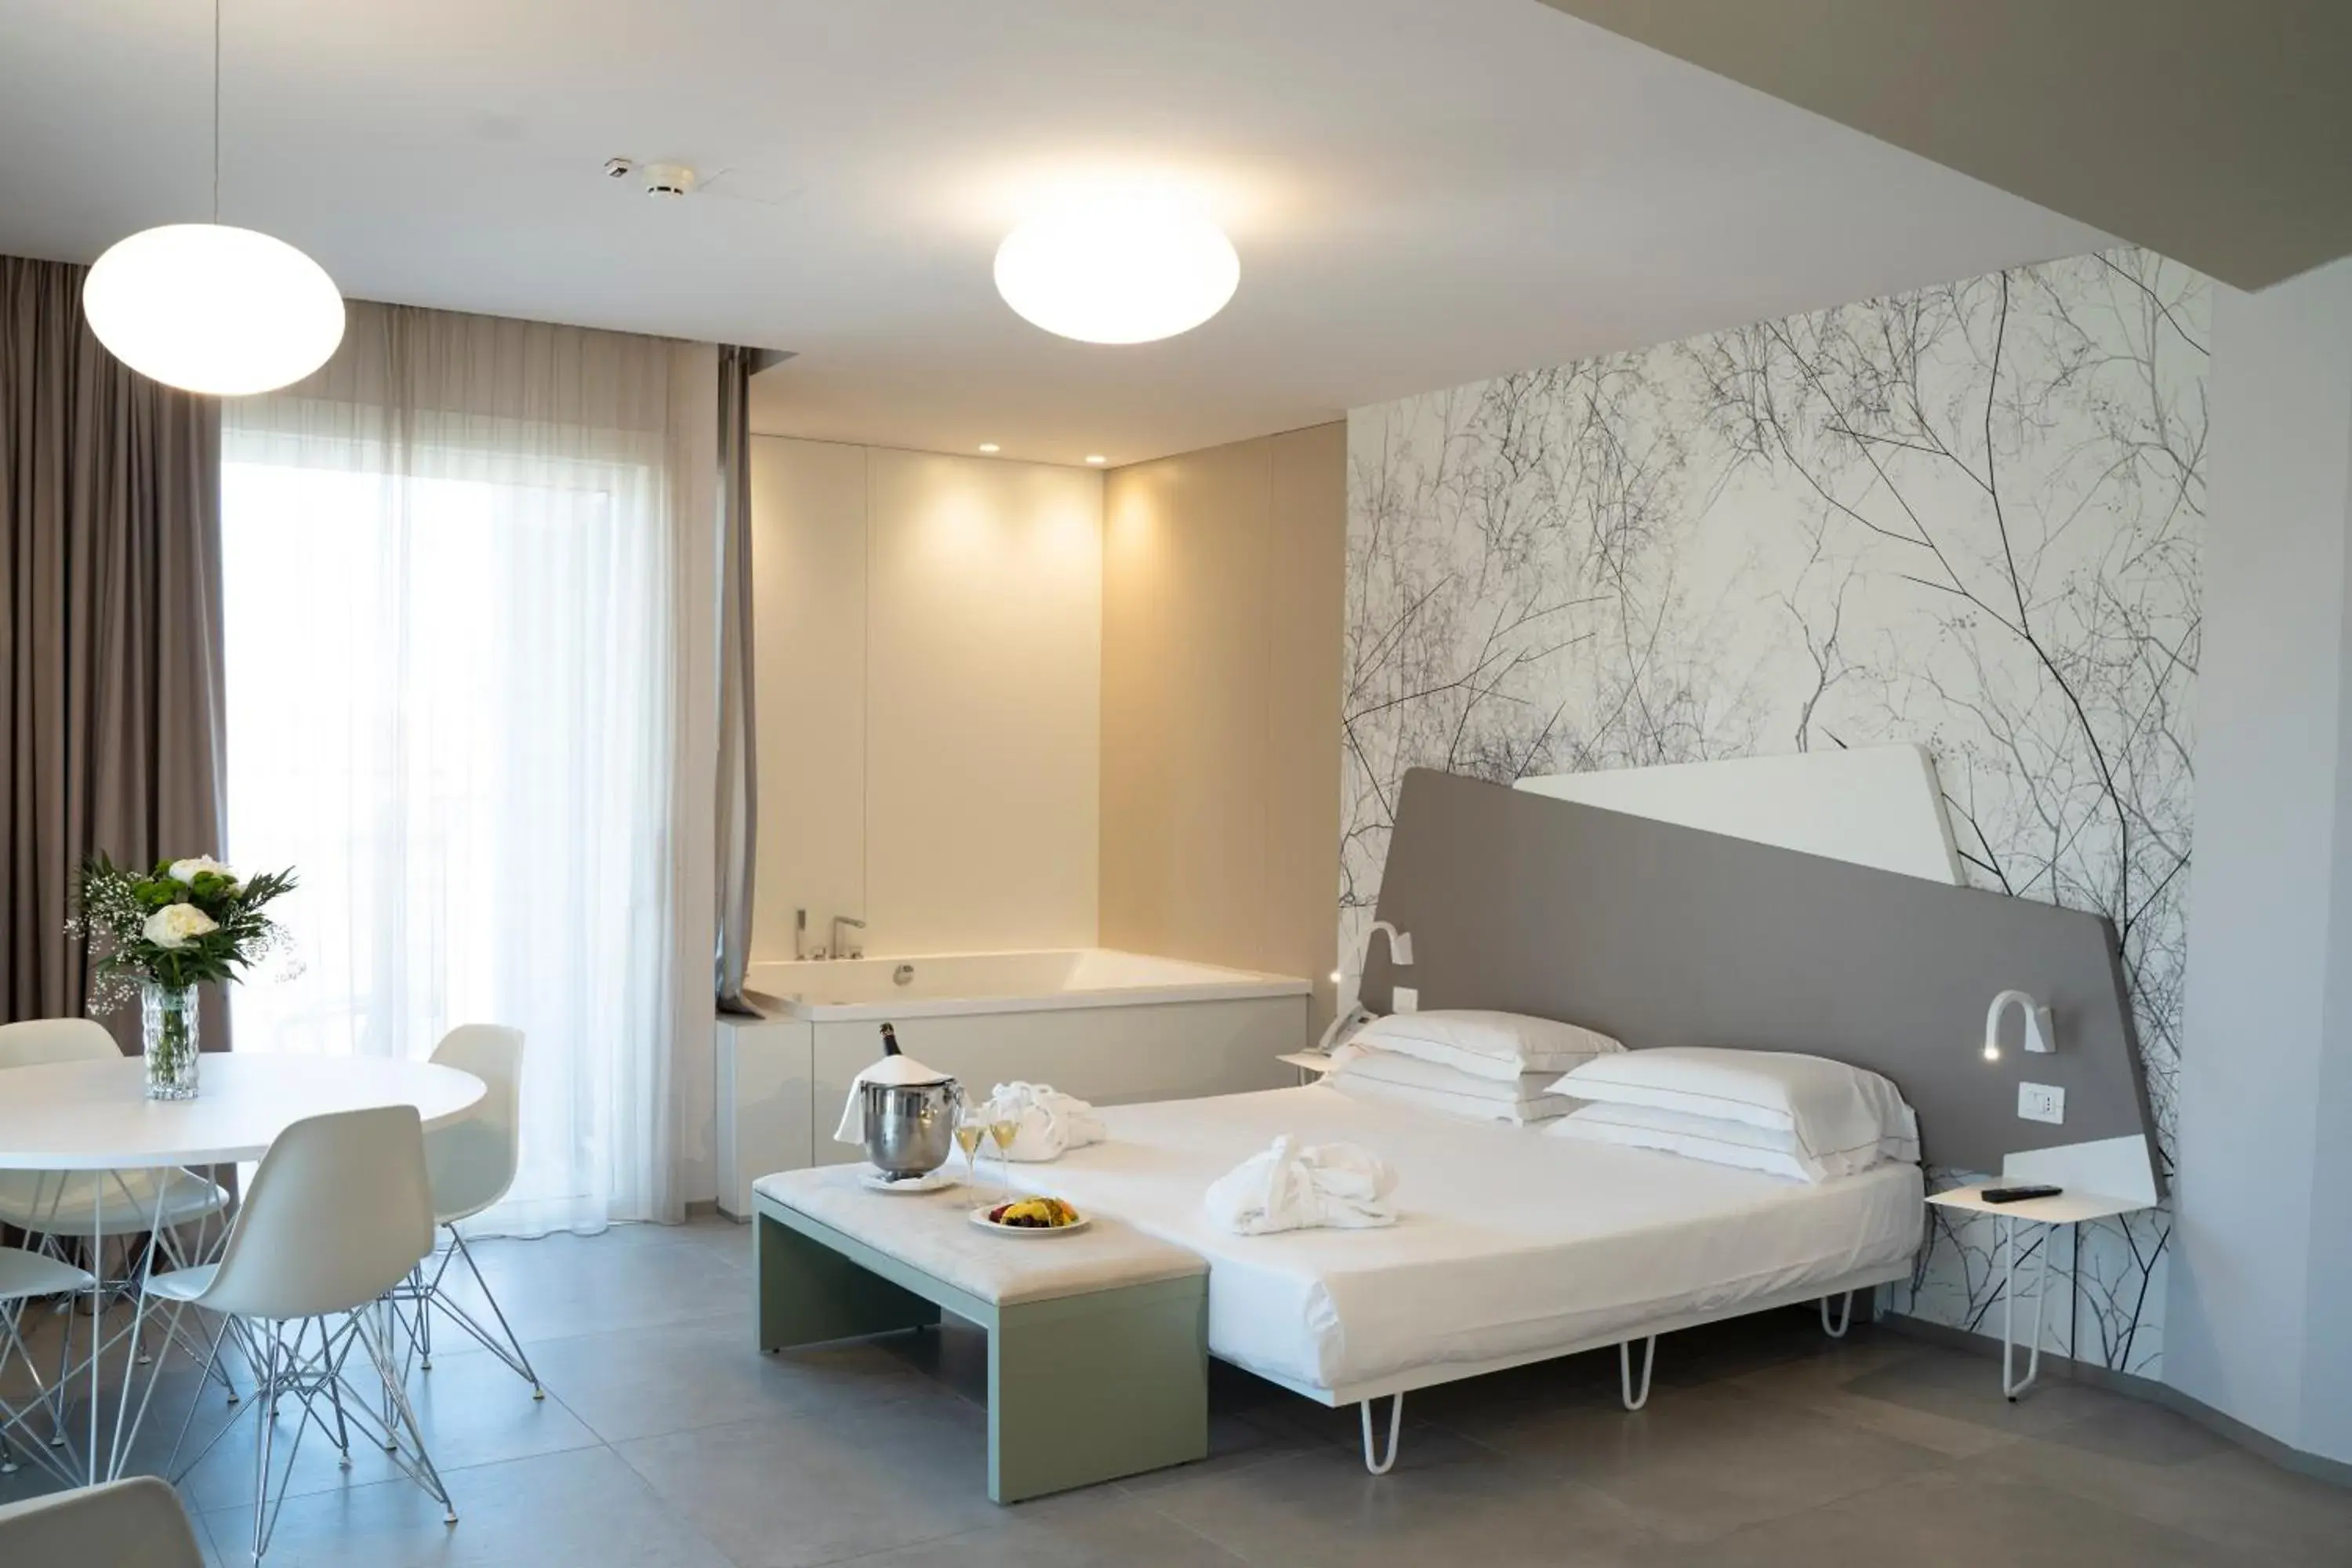 Photo of the whole room, Bathroom in Hotel Malavoglia